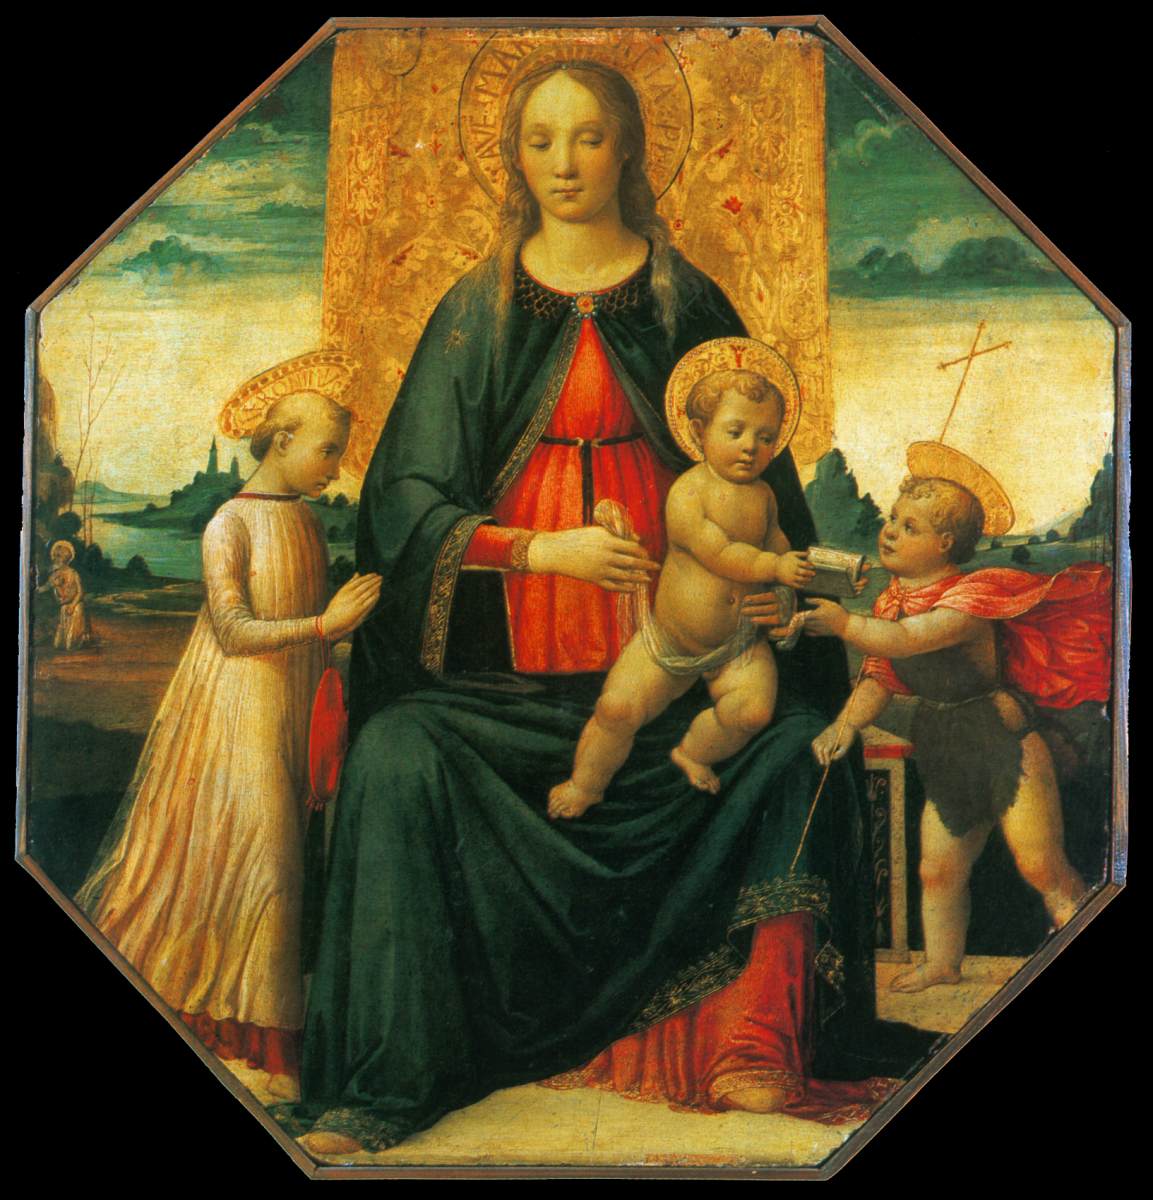 La Virgen y el Niño con El Bebé San Juan Bautista y El Joven San Jerónimo